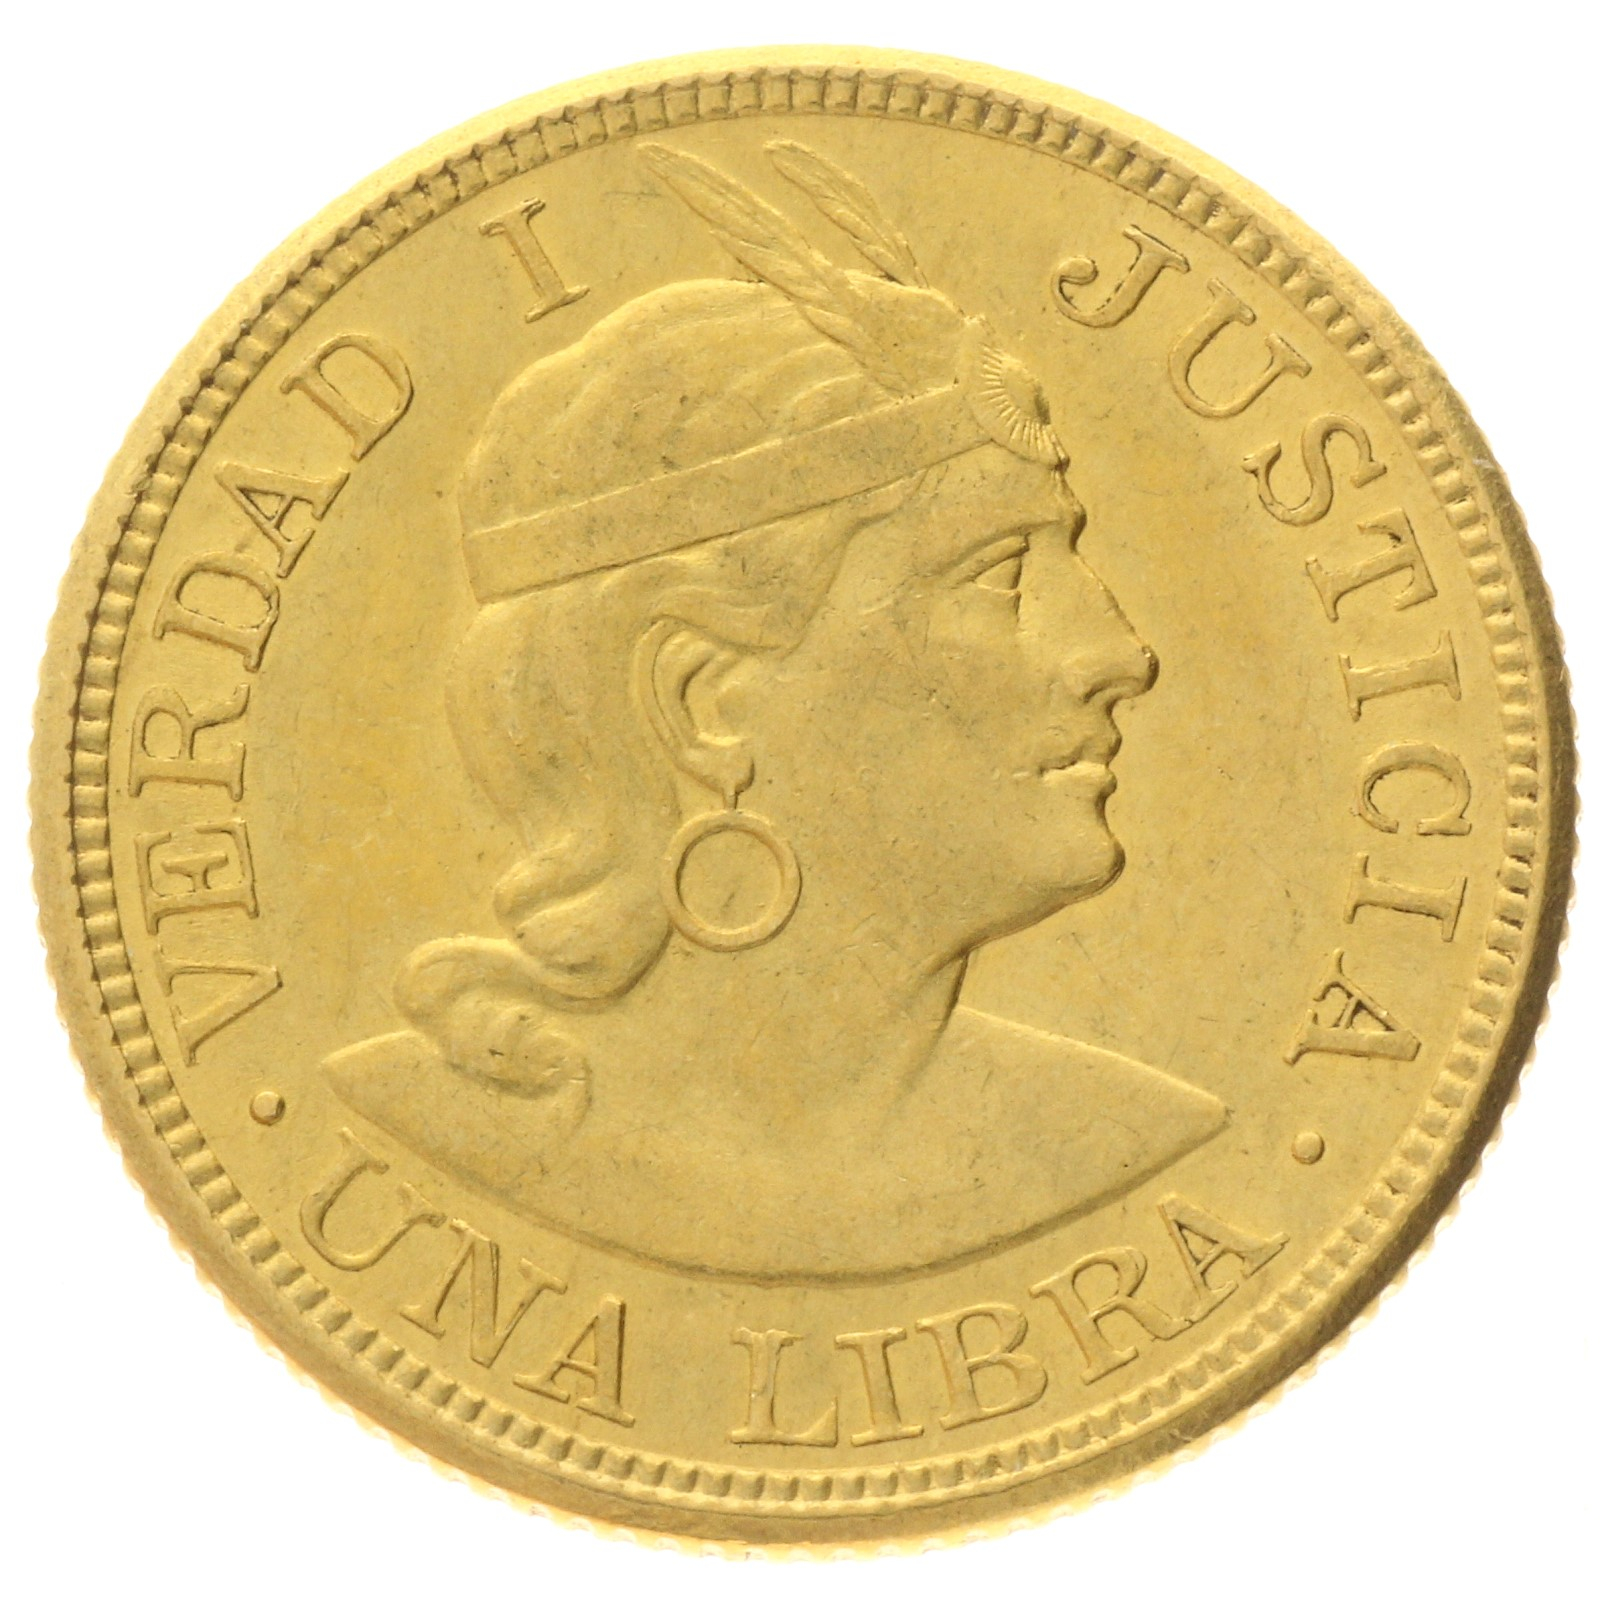 Peru - 1 libra - 1903 